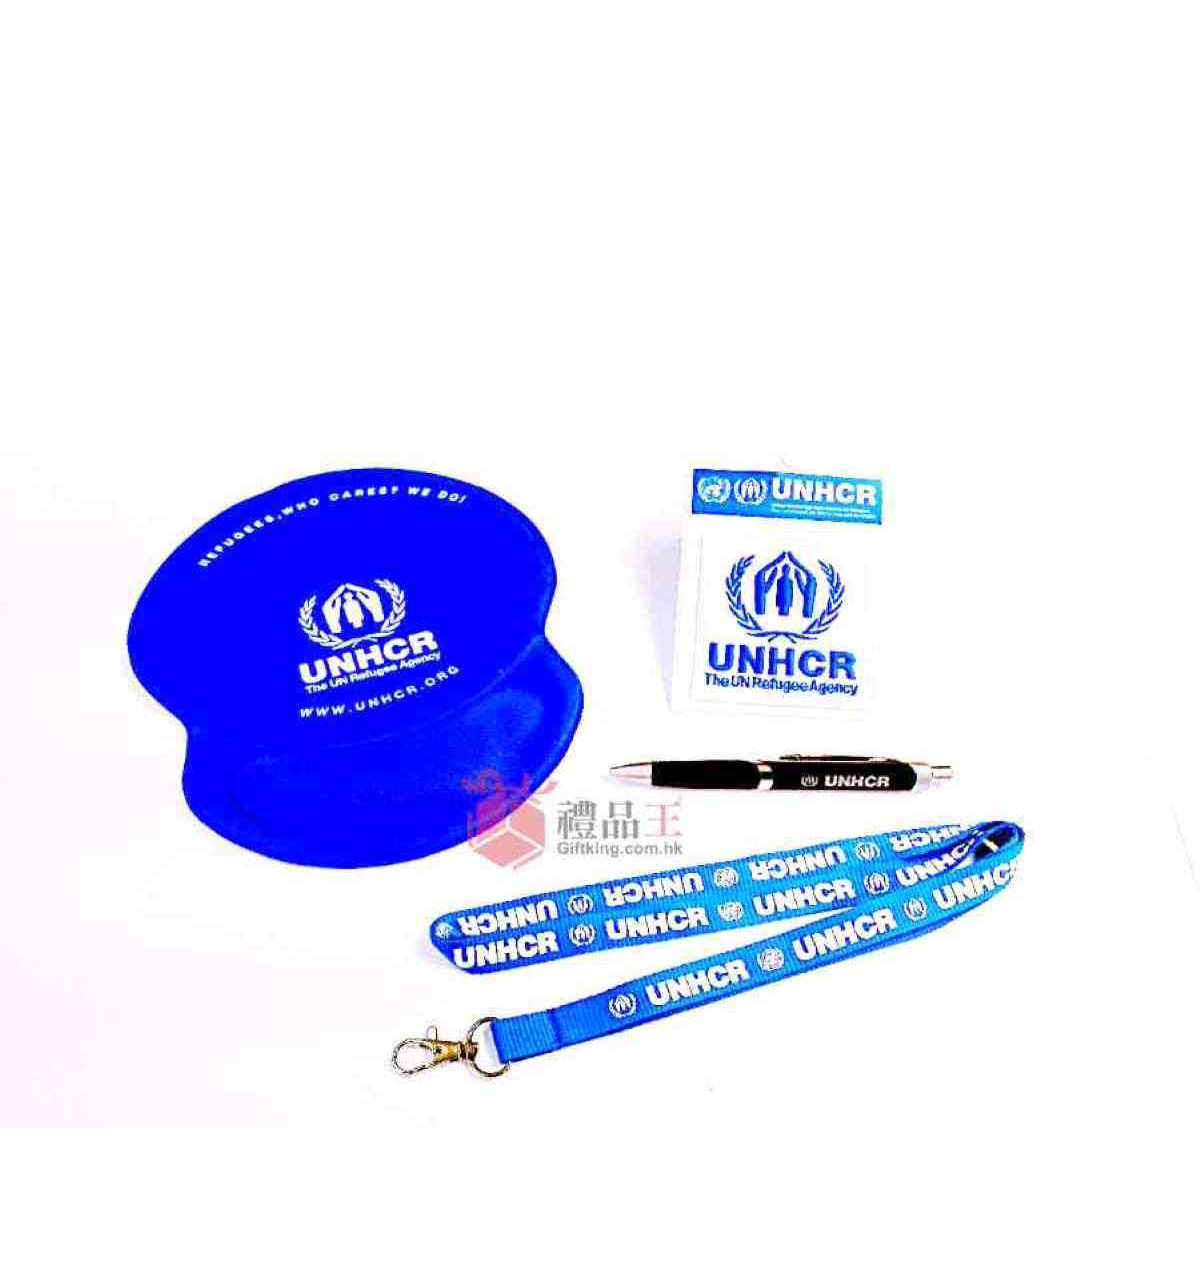 联合国难民署-系列礼品 (文具及广告礼品)